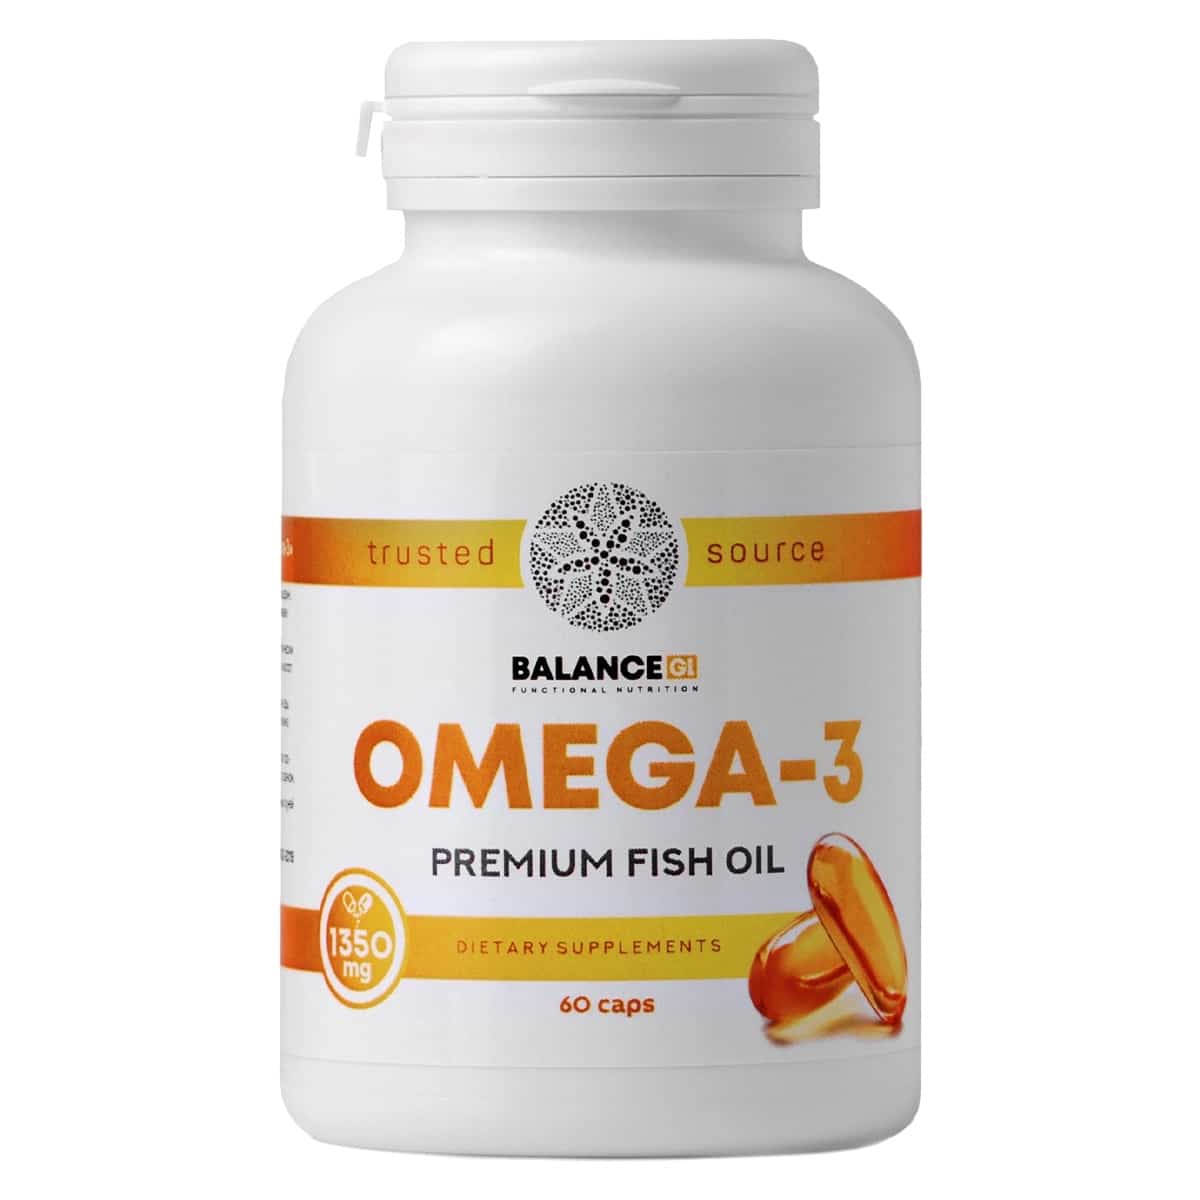 Life omega 3. Омега 3 Balance Group Life. Omega 3 Premium Balance. Omega-3 Premium Fish Oil. Omega 3 60 капсул.